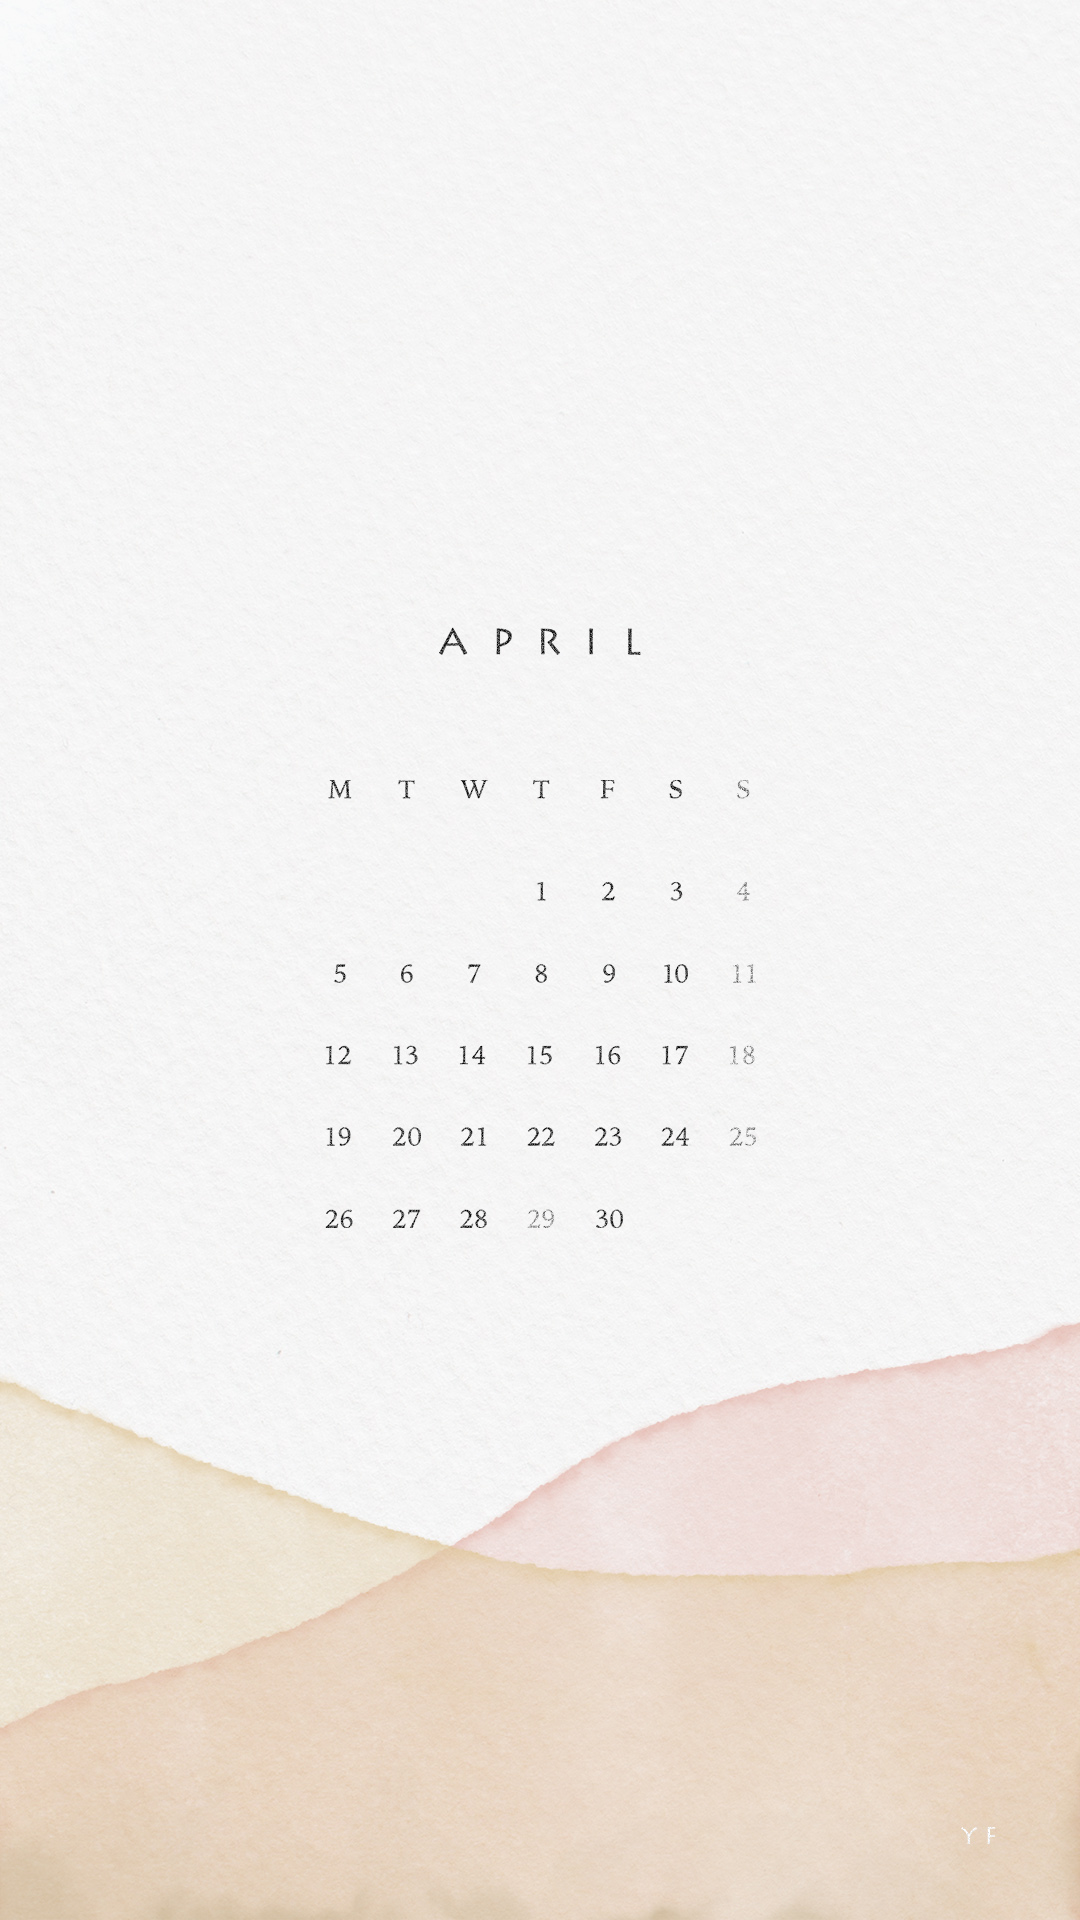 2021年4月のiPhone版月曜日始まりカレンダー壁紙 イエロー×ピンク 1080×1920px